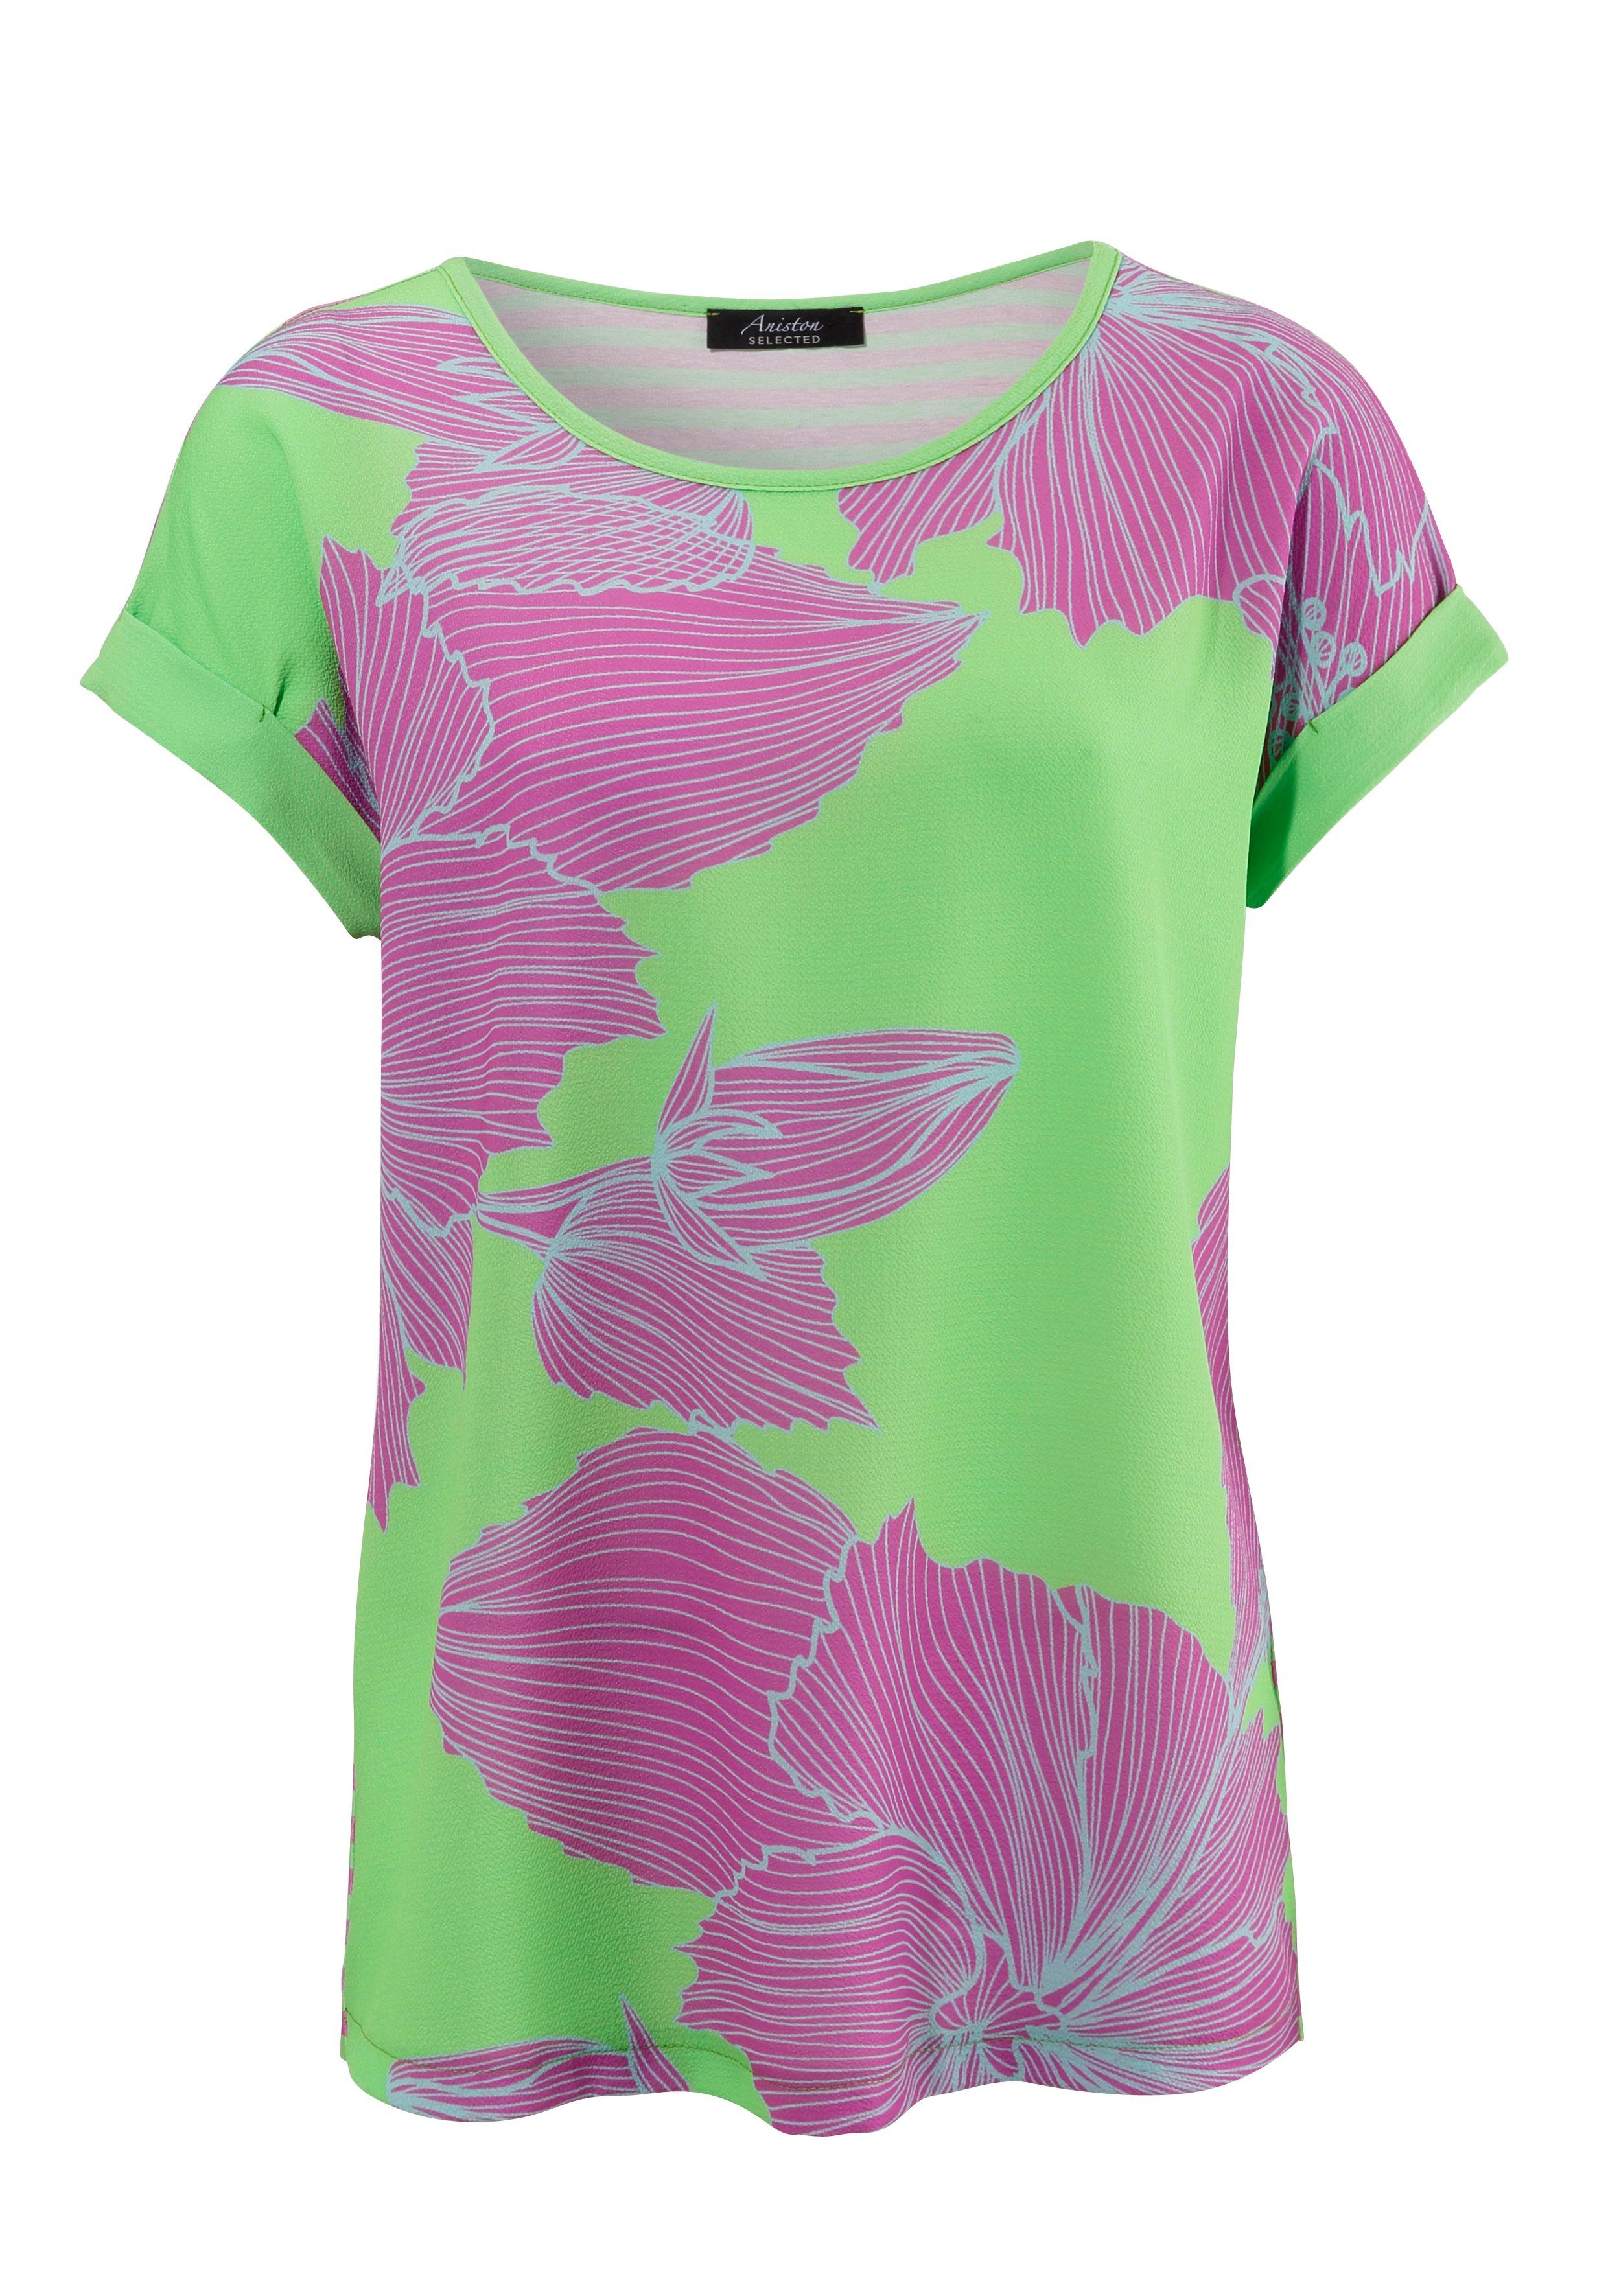 Aniston SELECTED Blusenshirt vorne Blütendruck, hinten grün-lila-hellblau Streifen mit mit